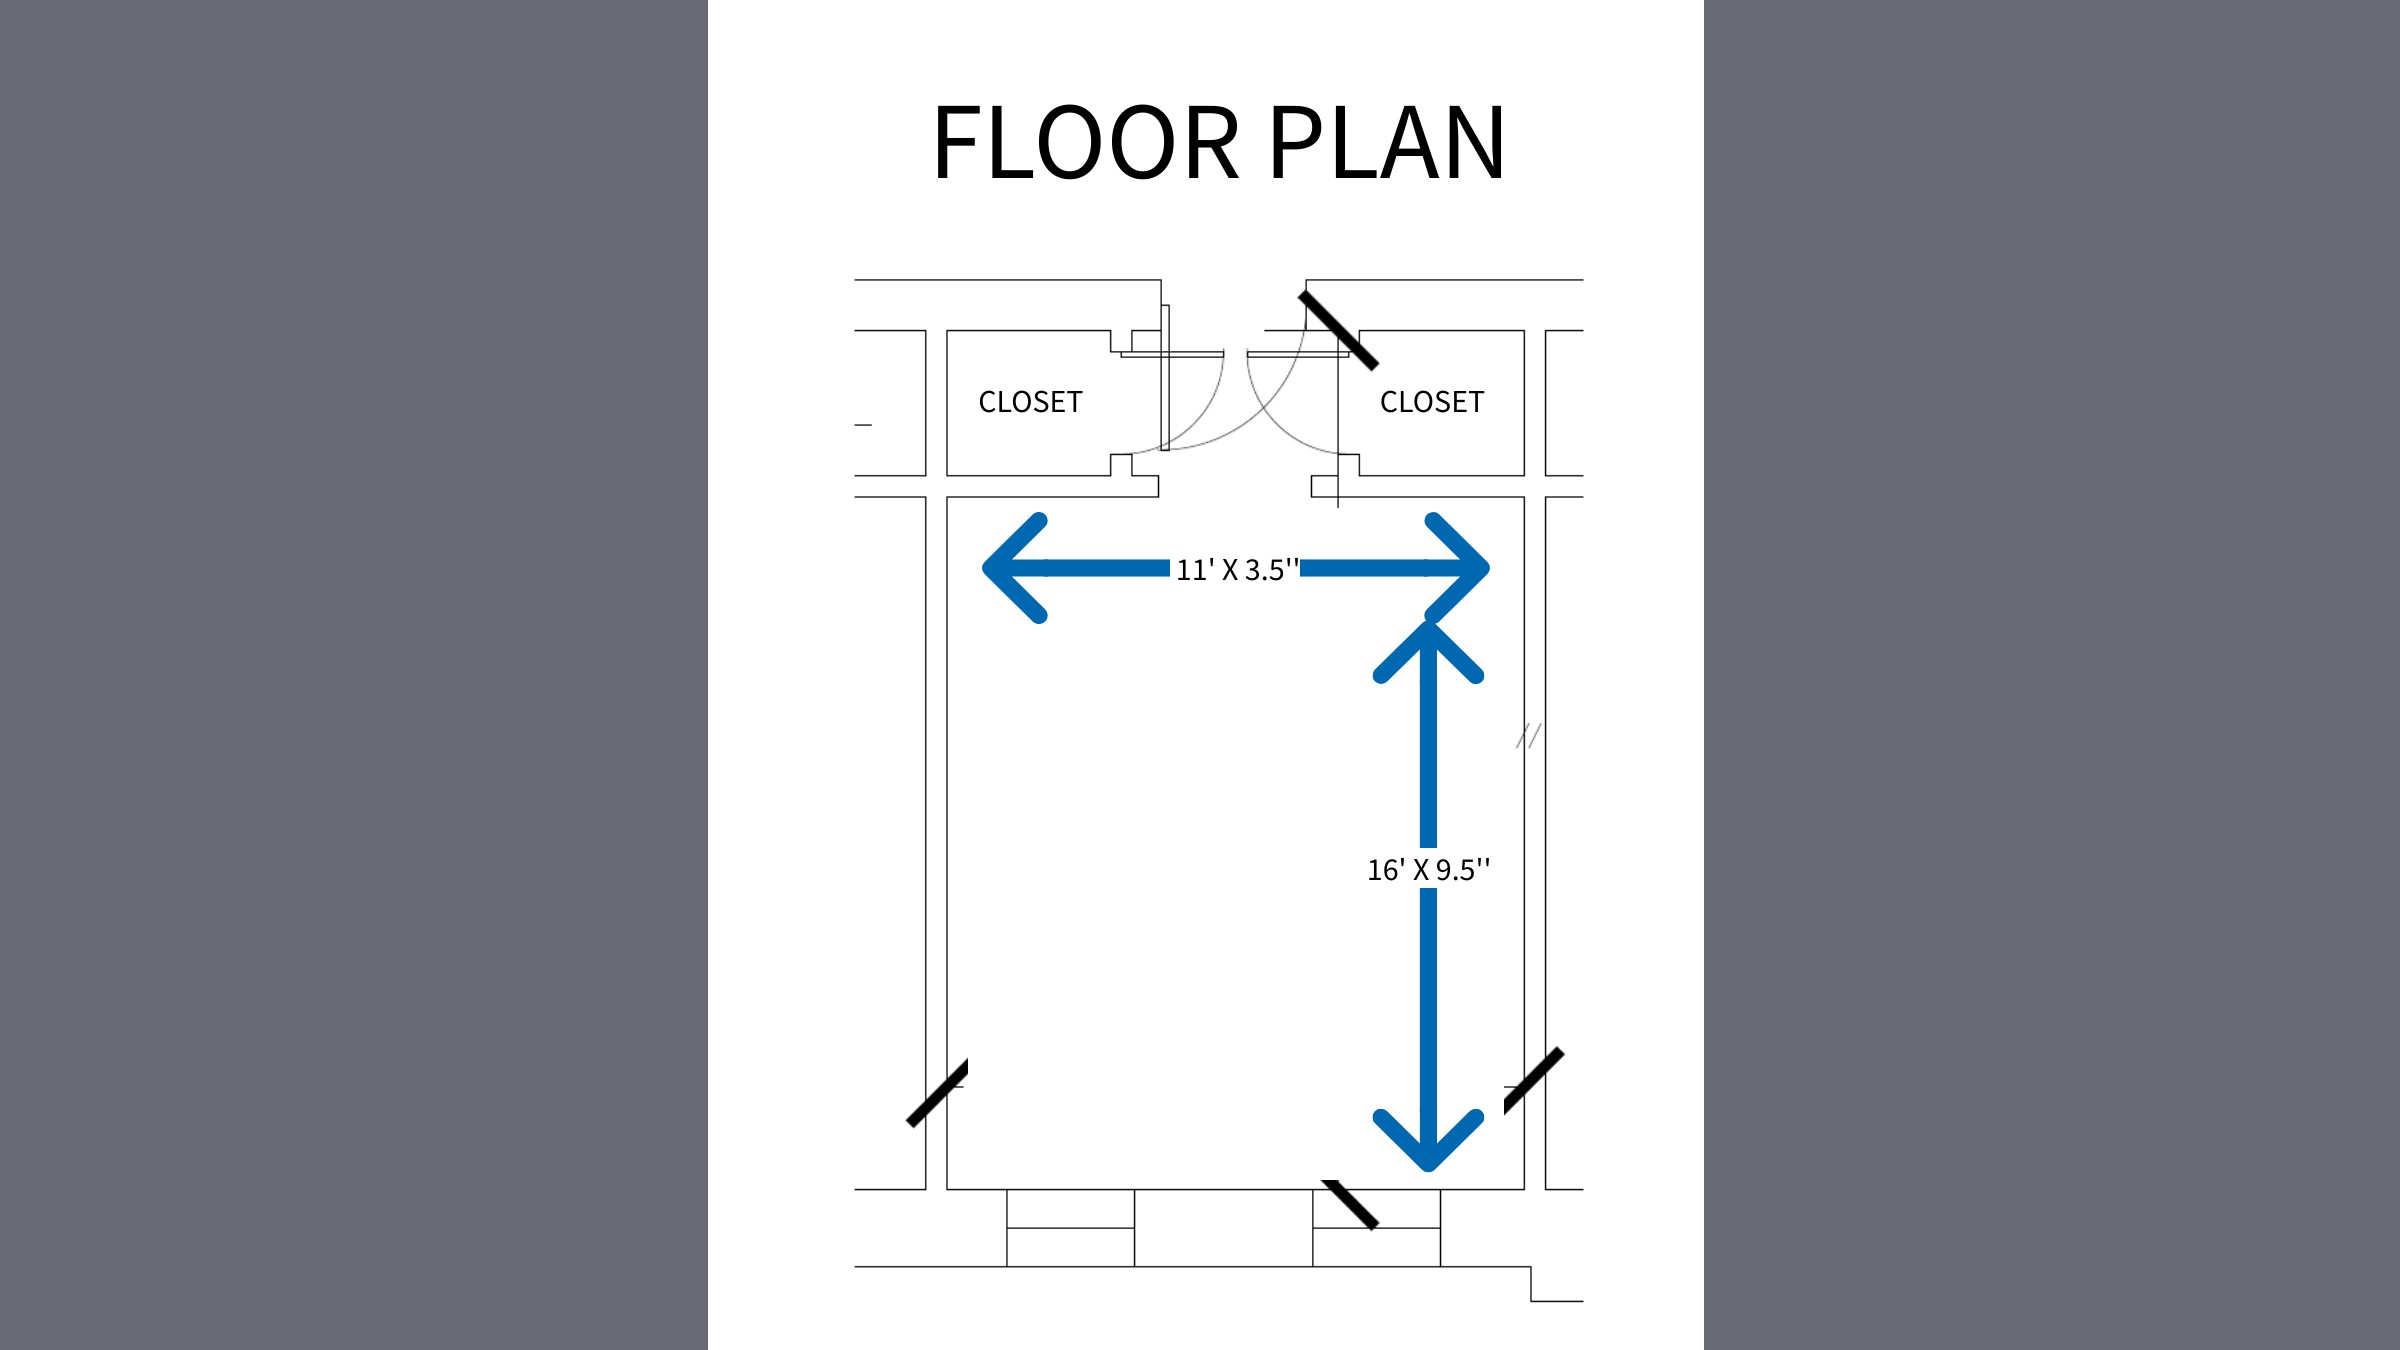 Hood Hall - Floorplan